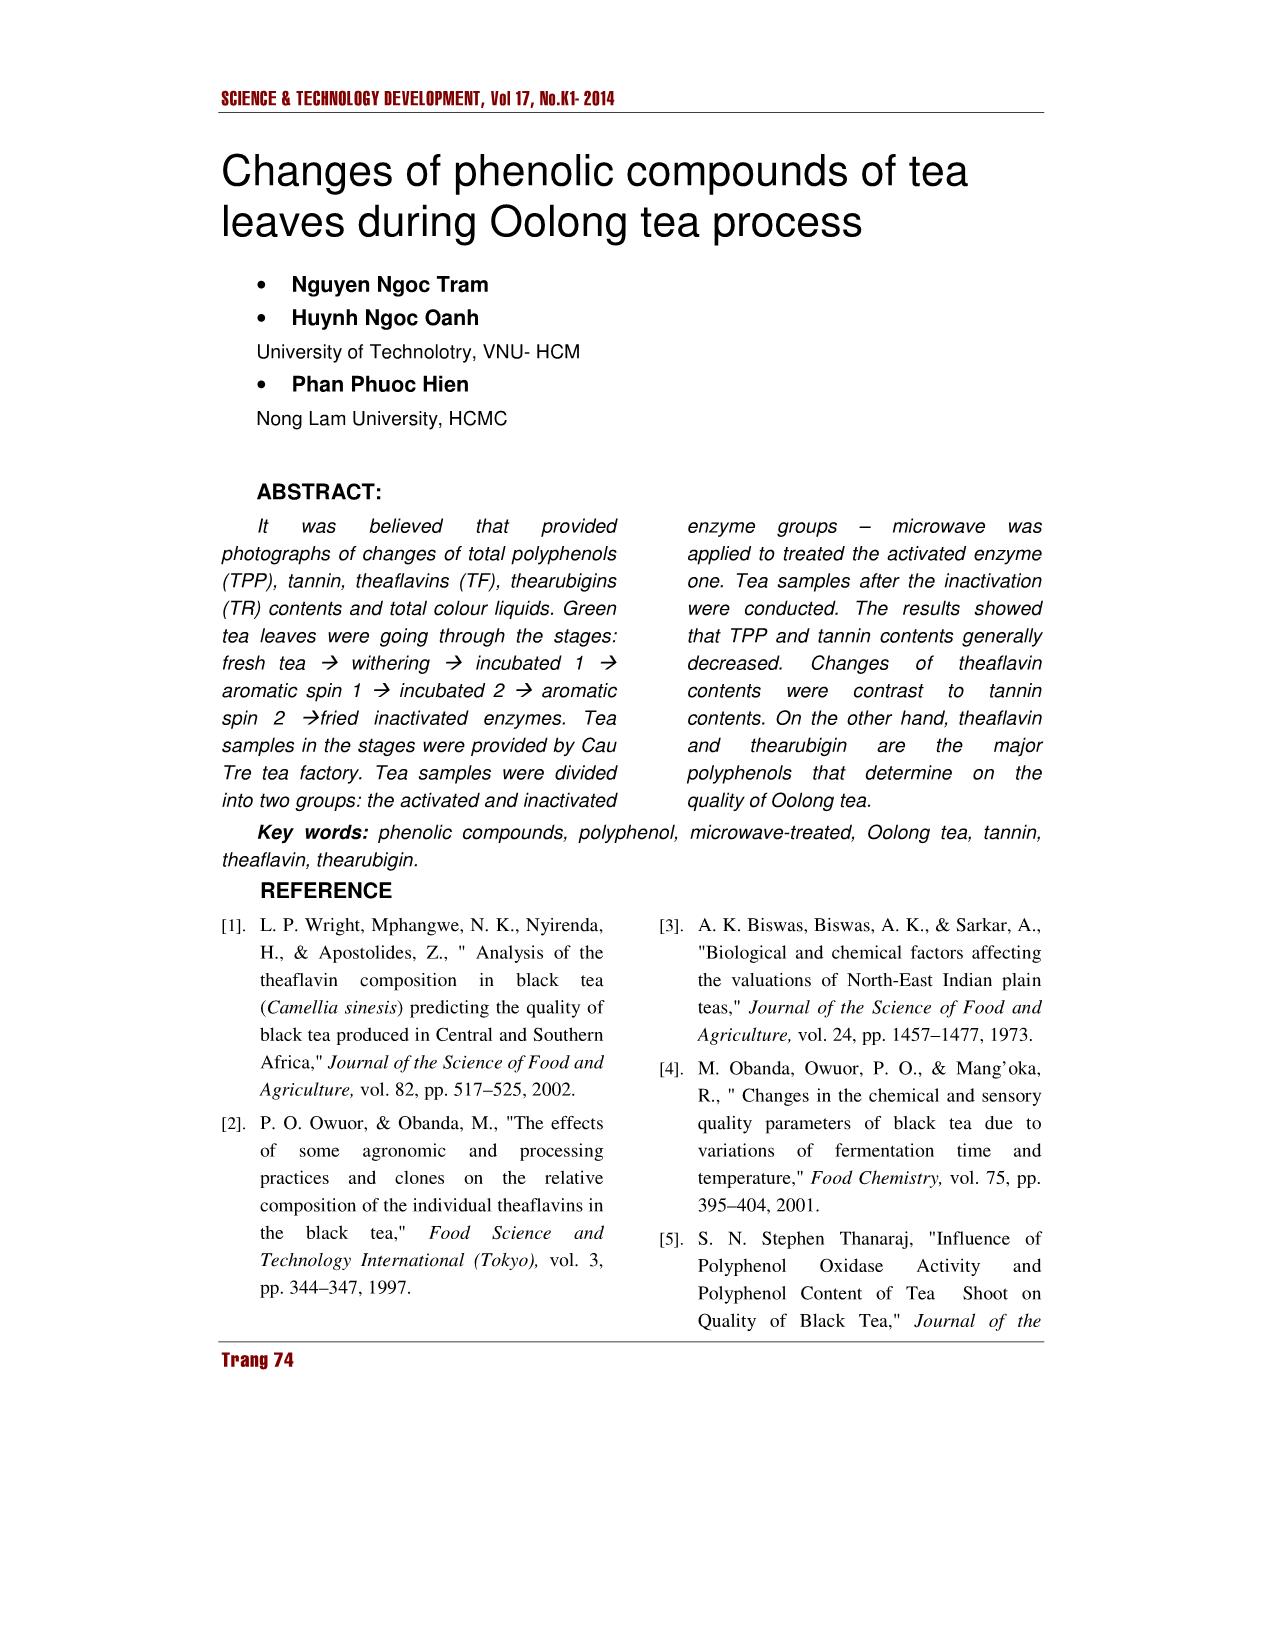 Sự biến động của các hợp chất phenolic trong lá trà trong quy trình chế biến trà Oolong trang 8